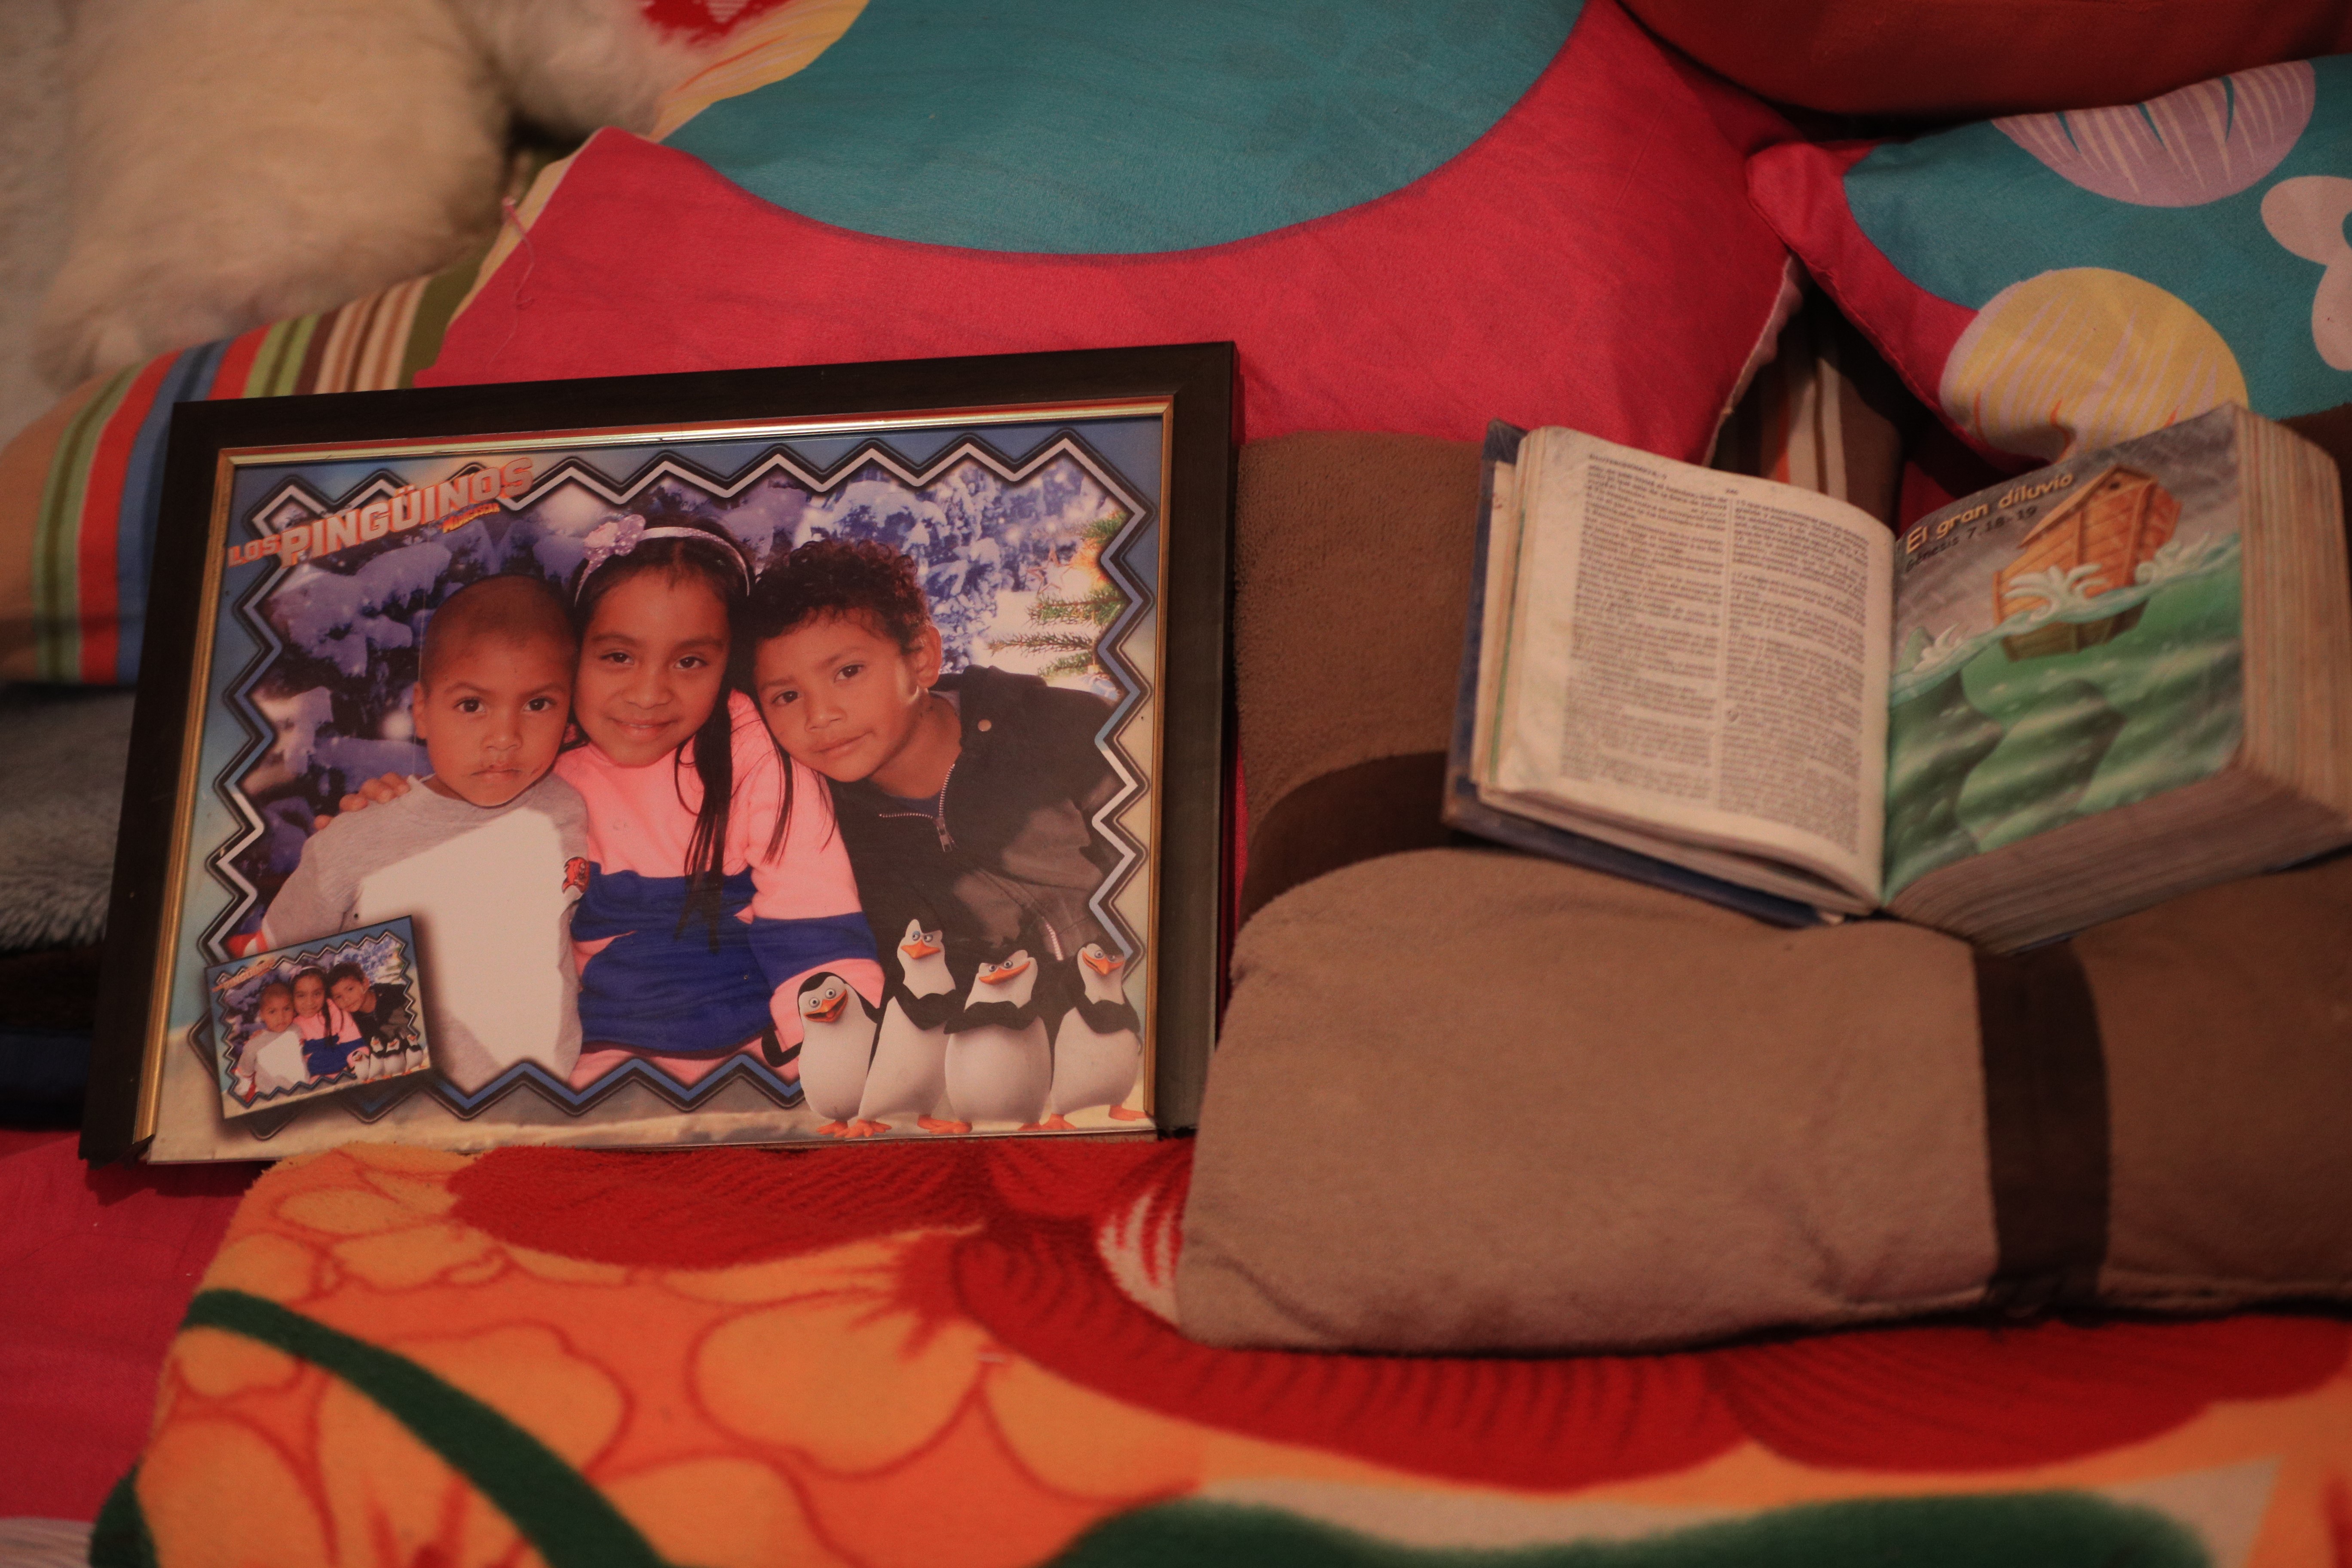 Jimena aparece enuna fotografía junto a sus hermanos, la familia vive en Mixco, Guatemala. (Foto Prensa Libre: Carlos Hernández) 